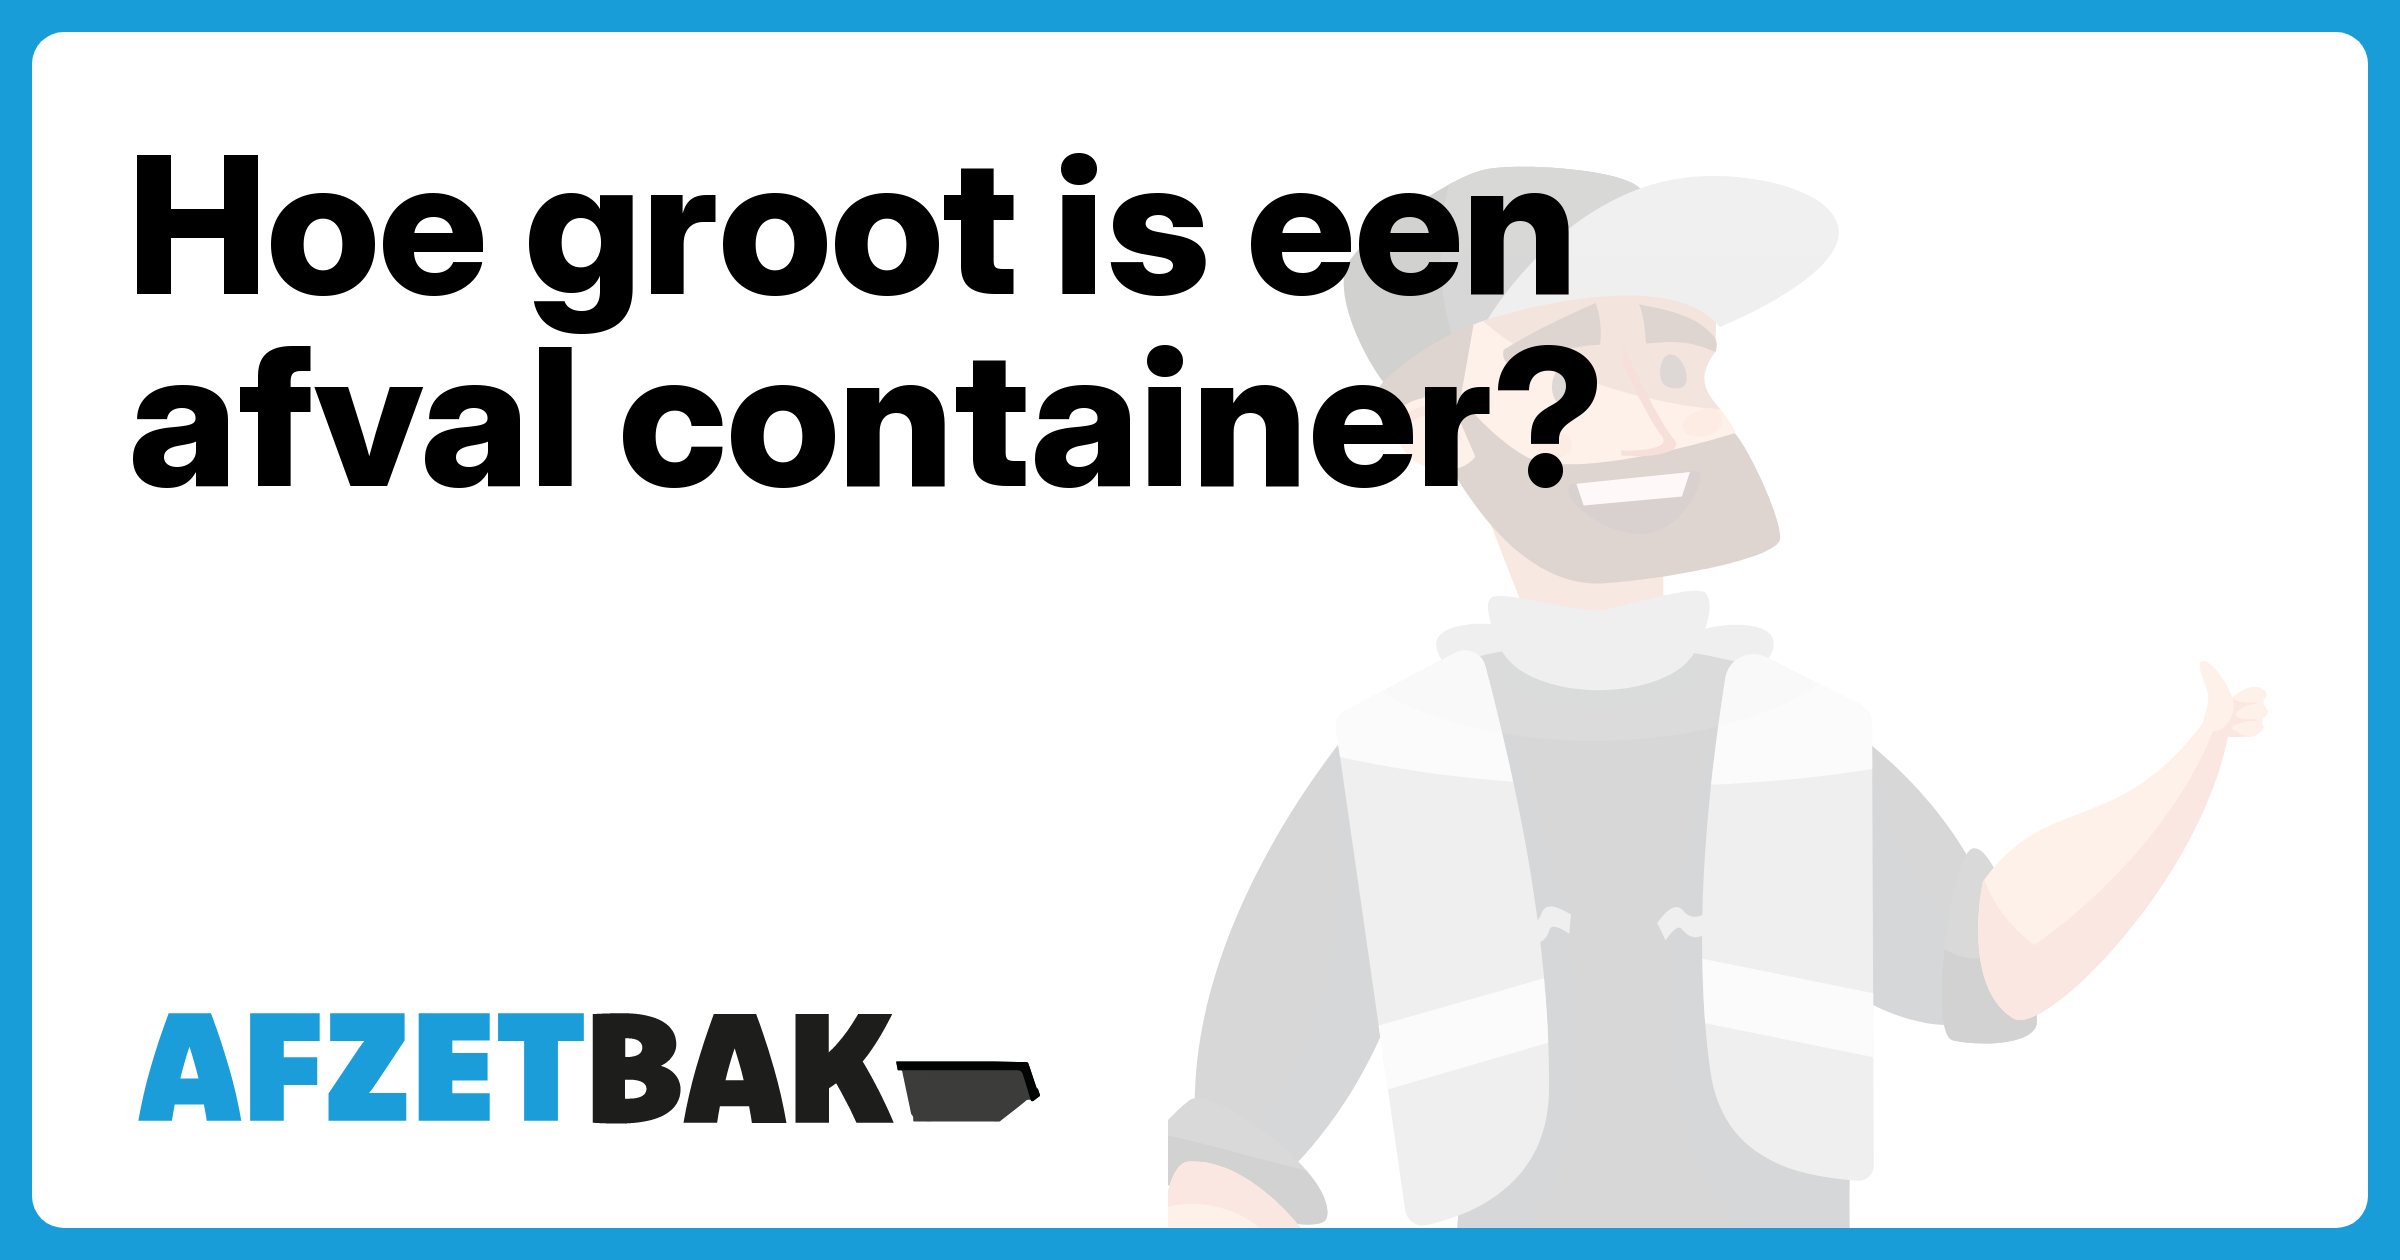 Hoe groot is een afval container? - Afzetbak.nl